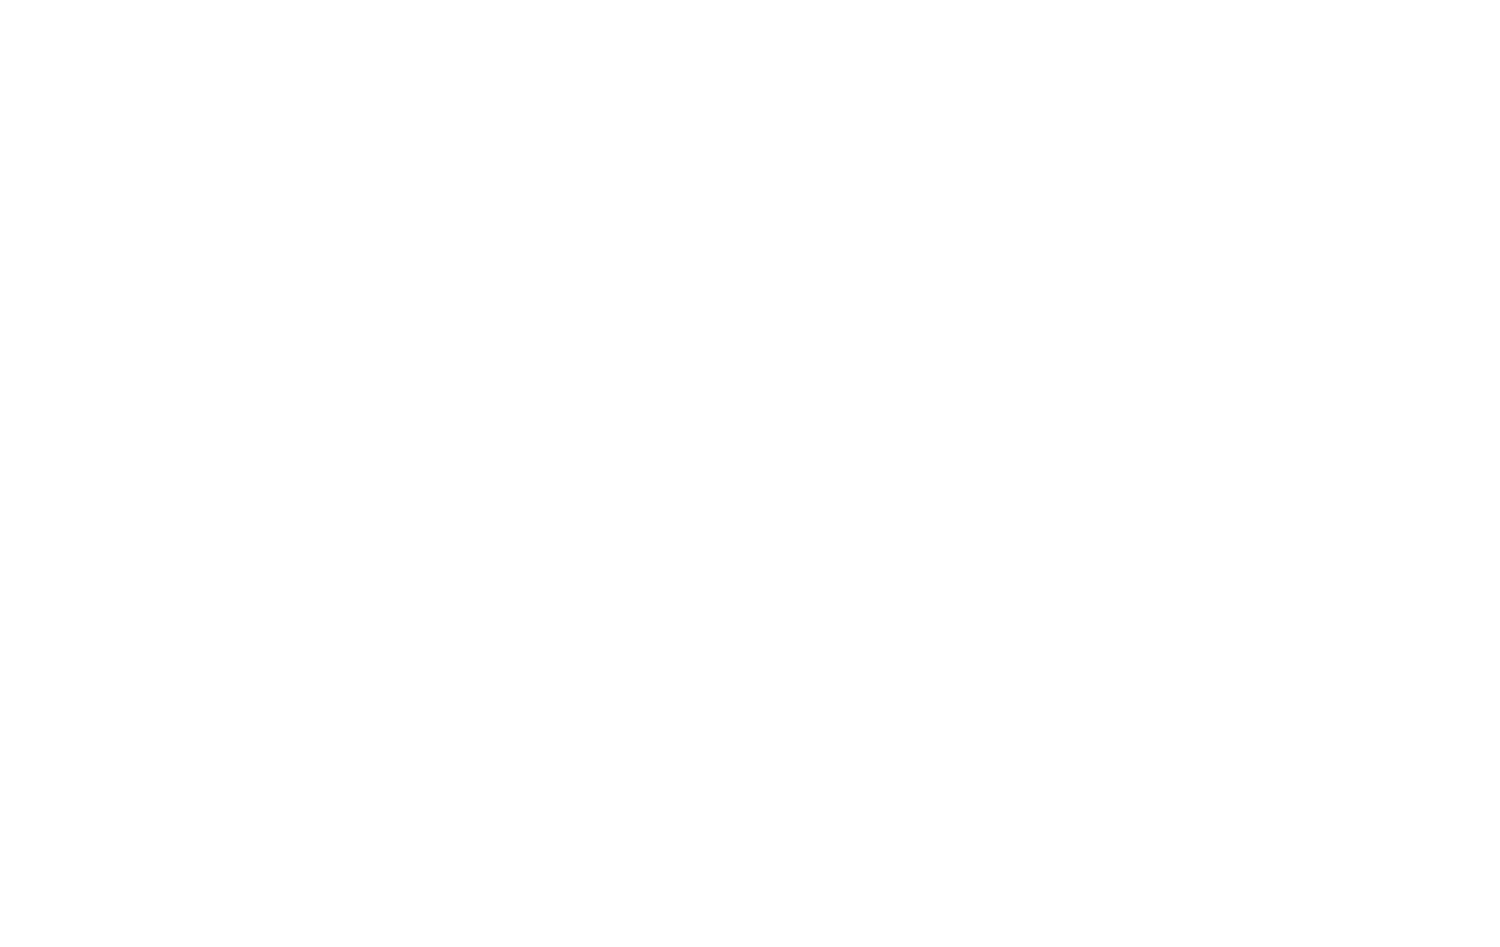 Sankoty Lakes